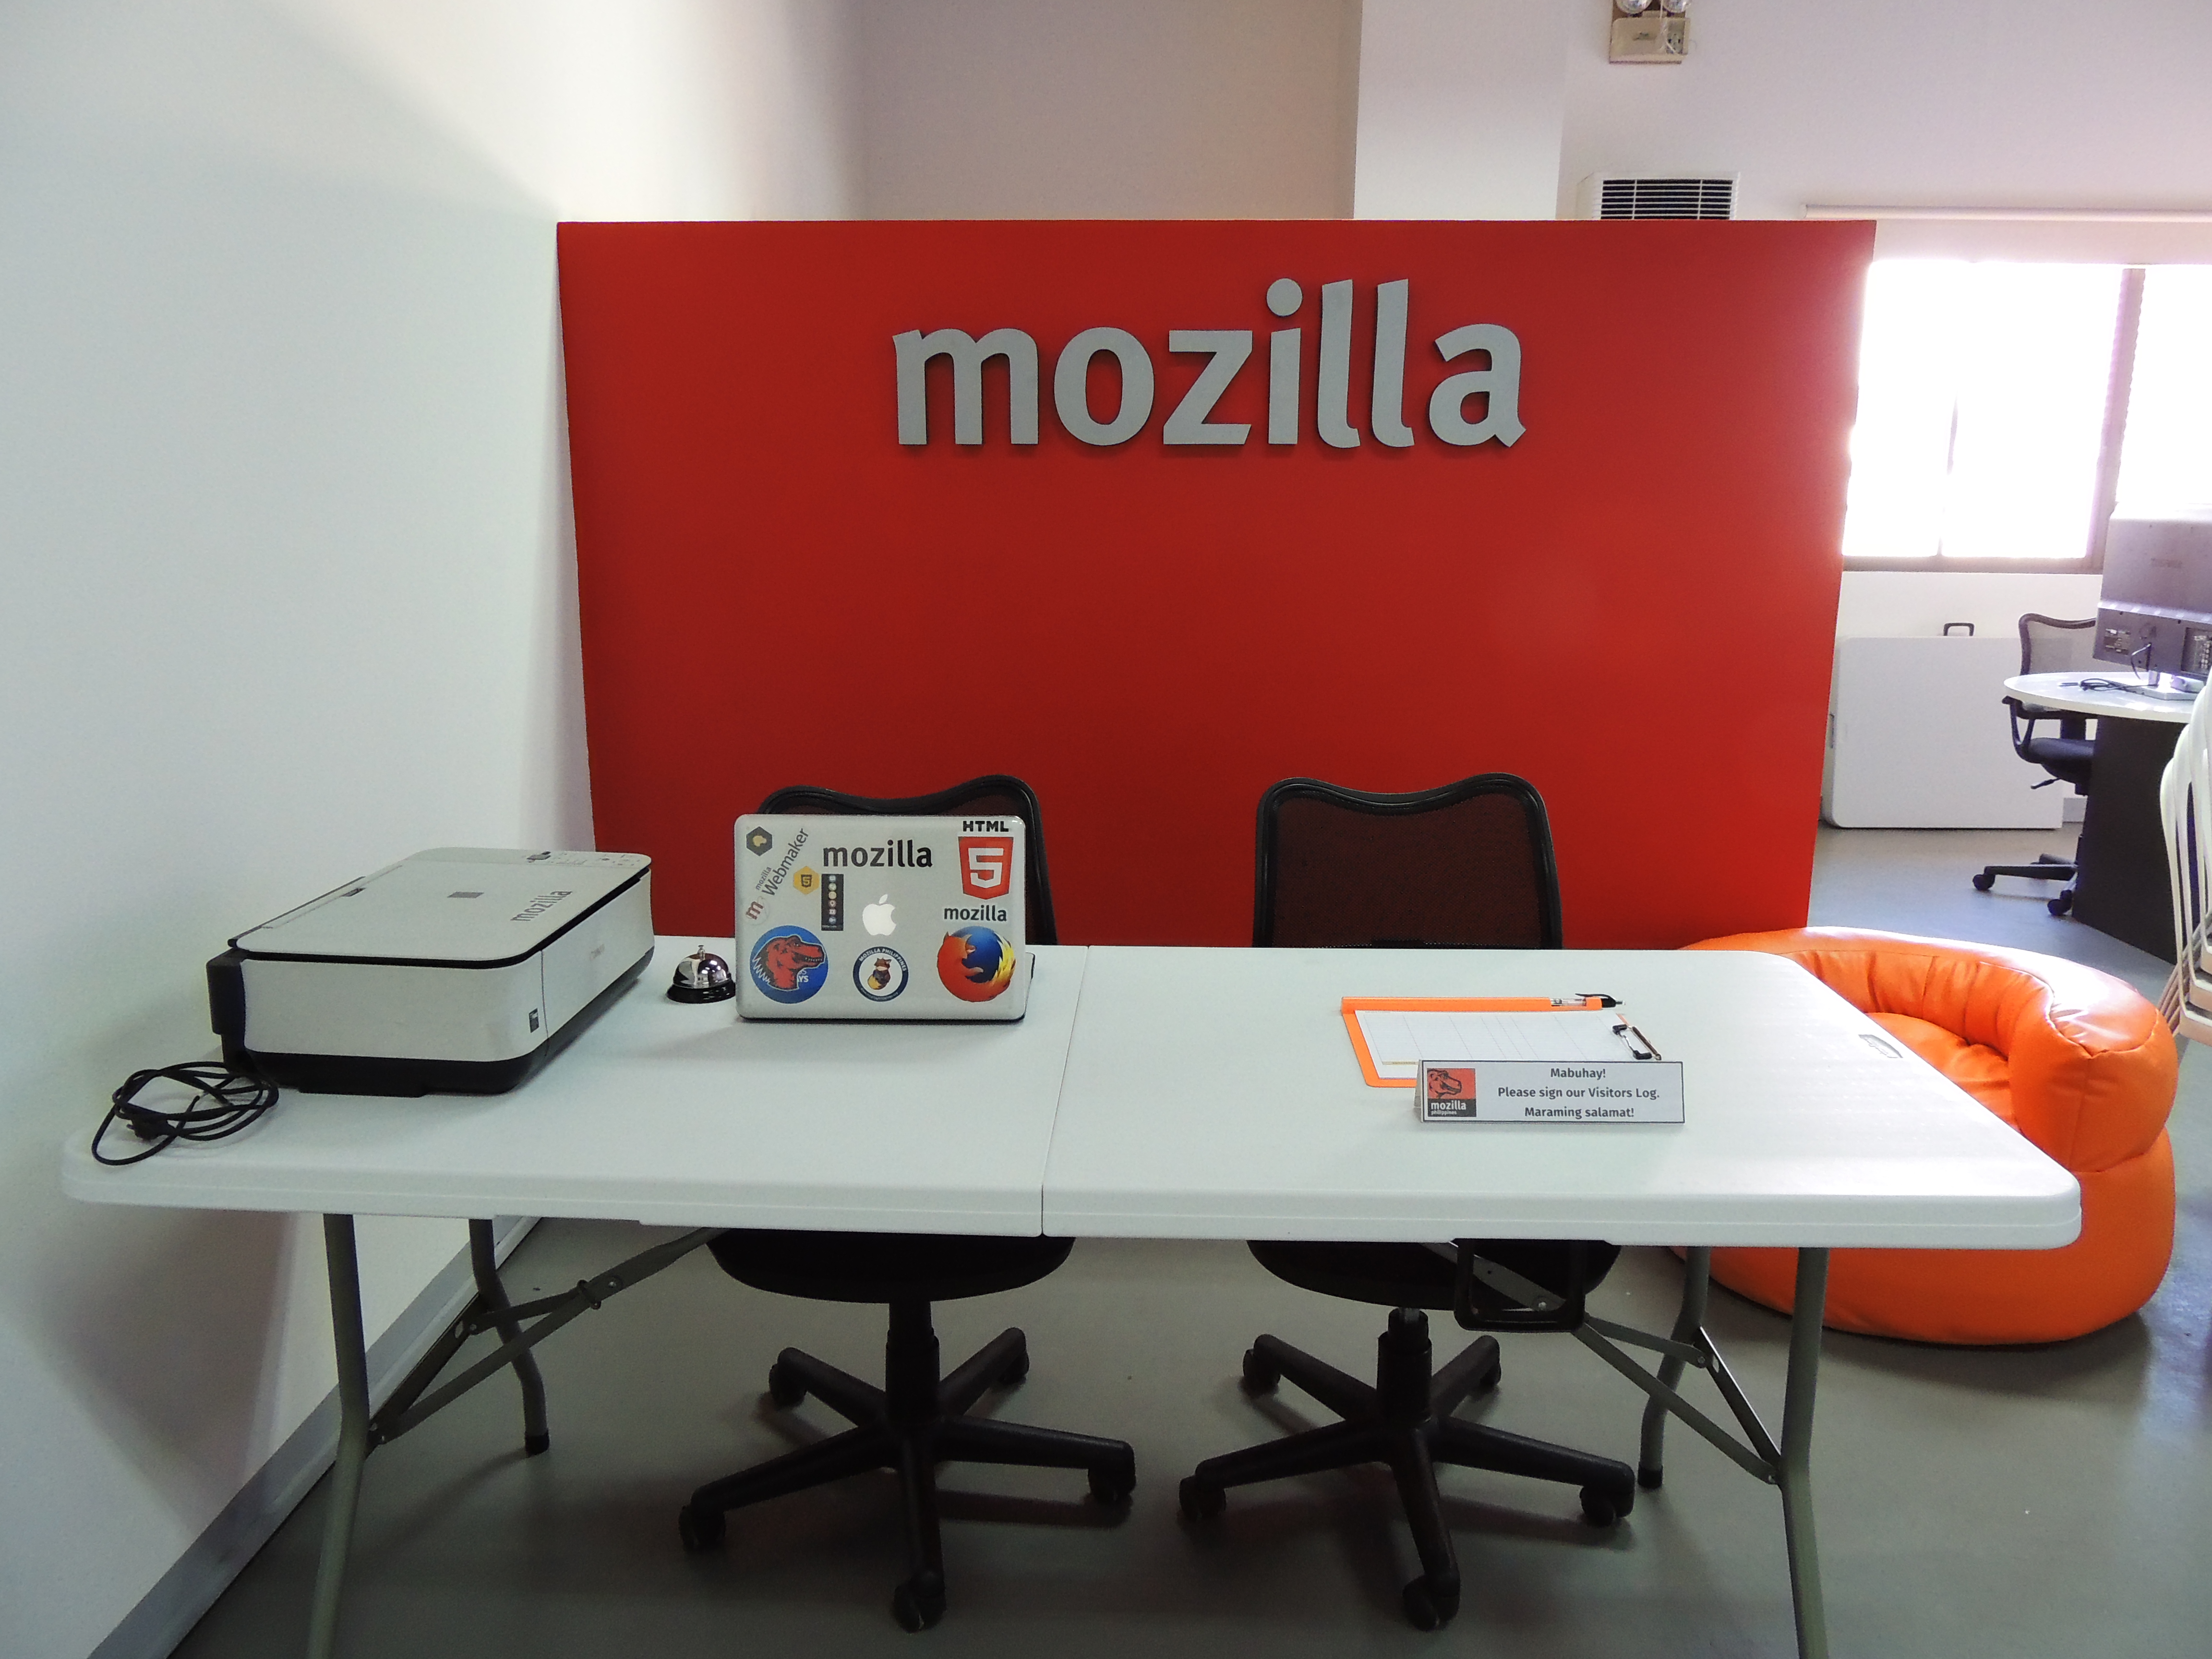 [Press Release] Mozilla Community Space Manila